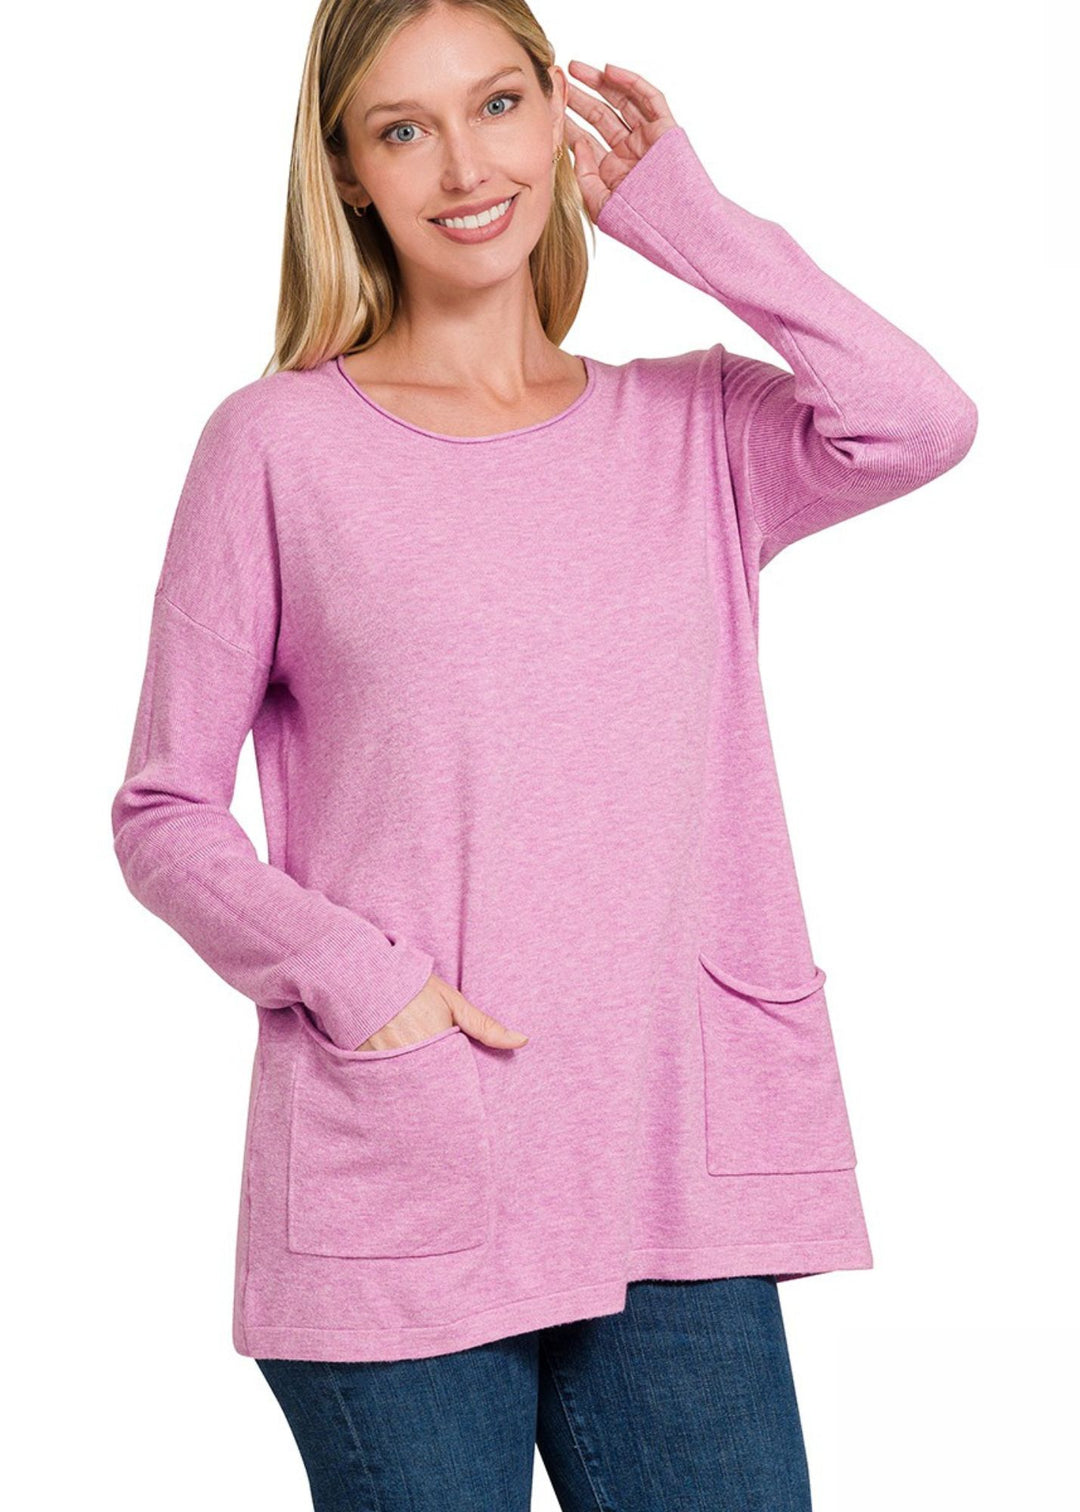 Zen Lightweight Pocket Sweater (Mauve)